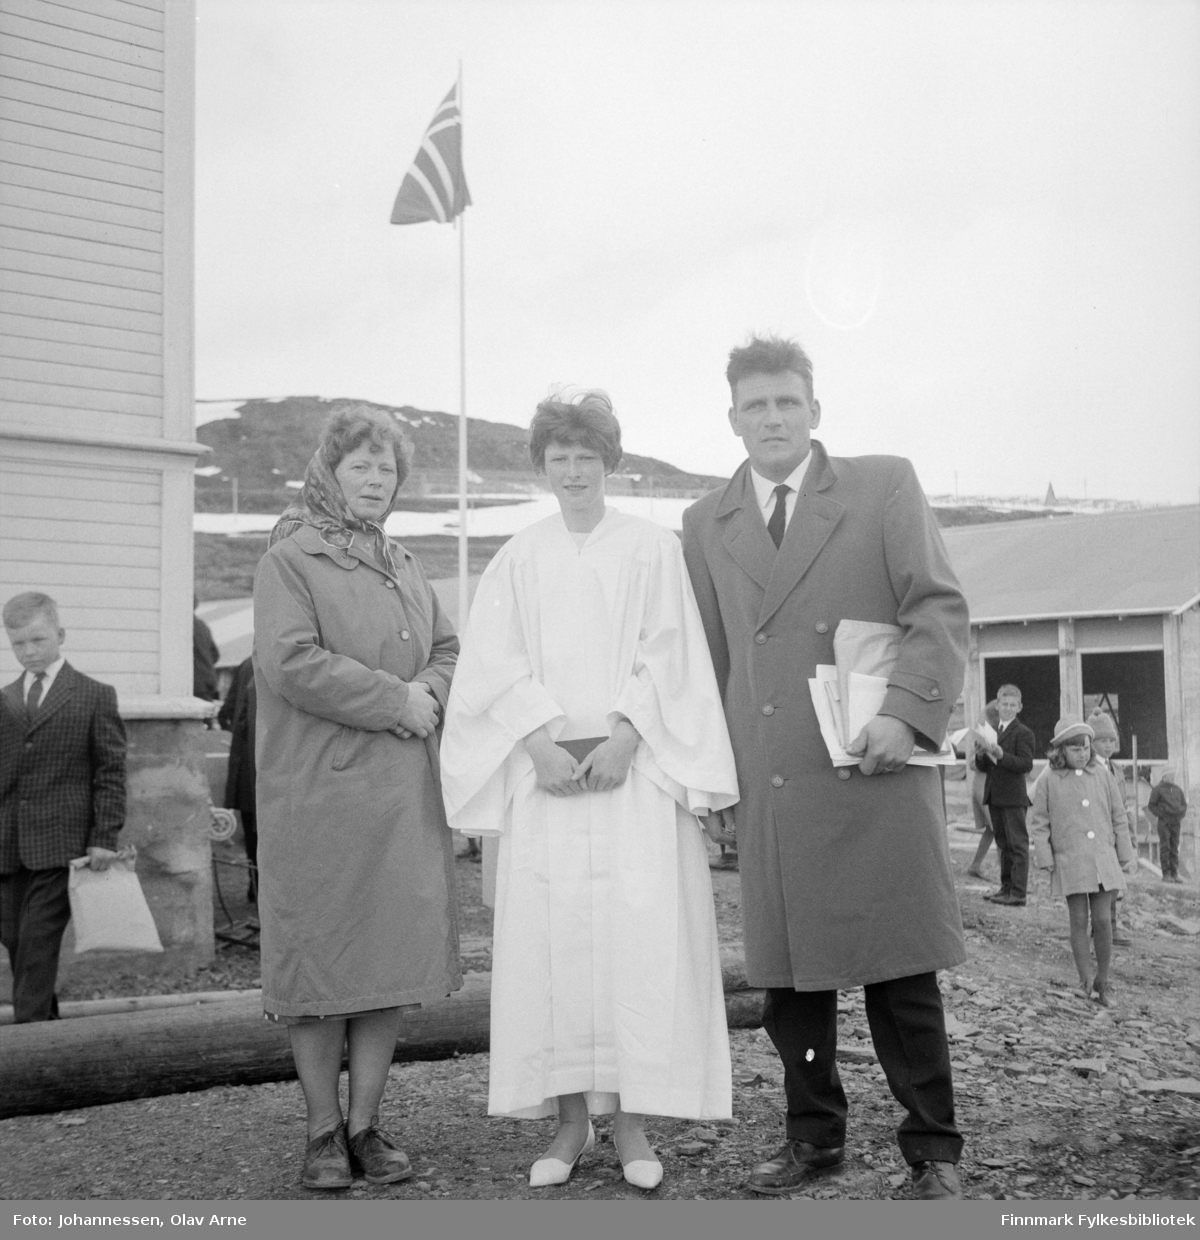 Solbjørg "Bogga" til venstre, datteren Lisbeth Ophaug (1950) og faren Allert Sørensen. Idar Wahlmann helt til venstre. De står utenfor Båtsfjord skole

Lisbeth ble konfirmert søndag 31. mai 1964 (Finnmarken annonse tirsdag 26.mai1964)

